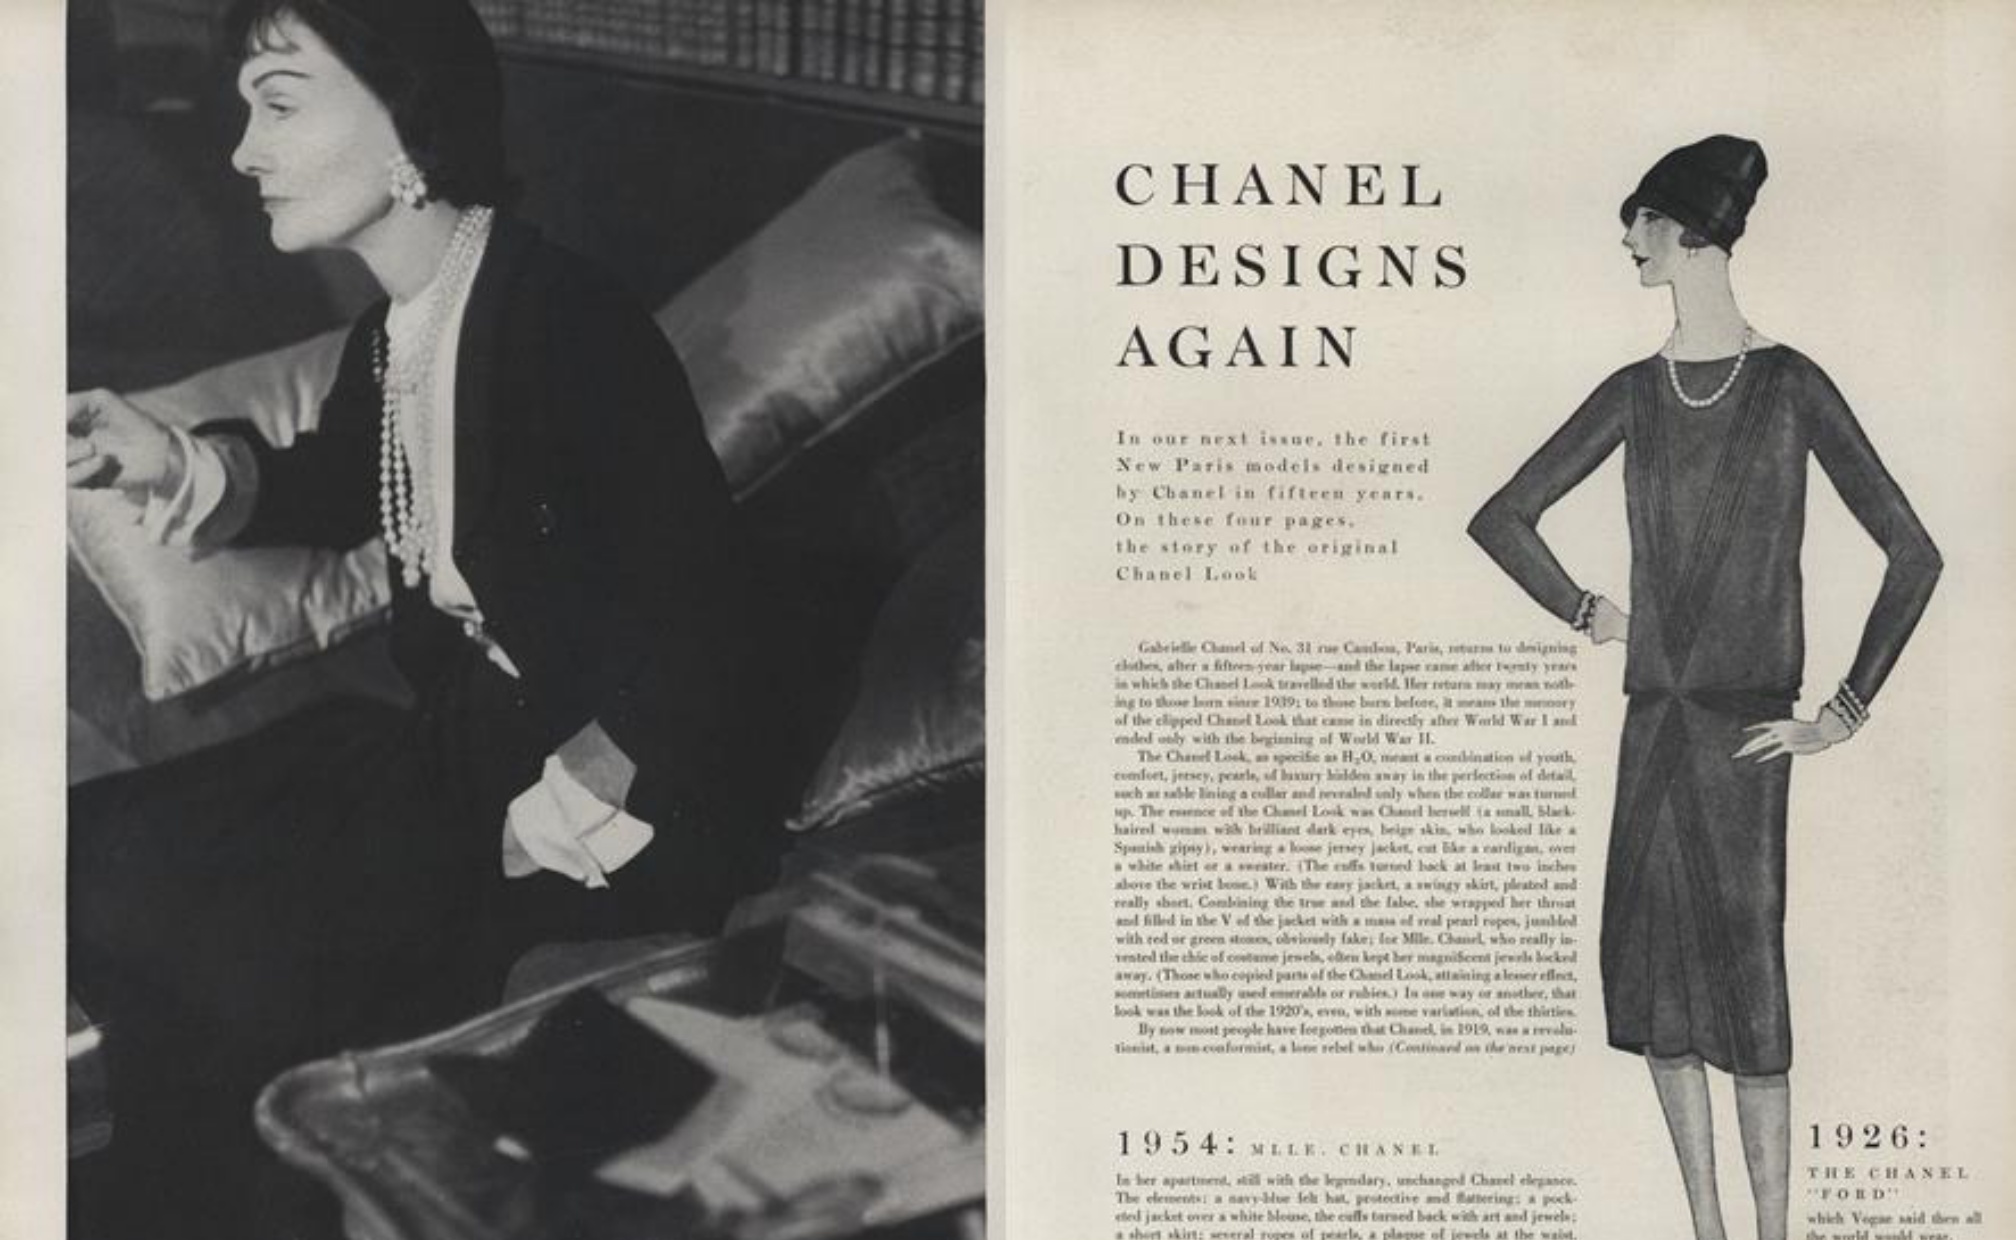 Salah satu artikel majalah Vogue yang memberitakan kembalinya Chanel di tahun 1954